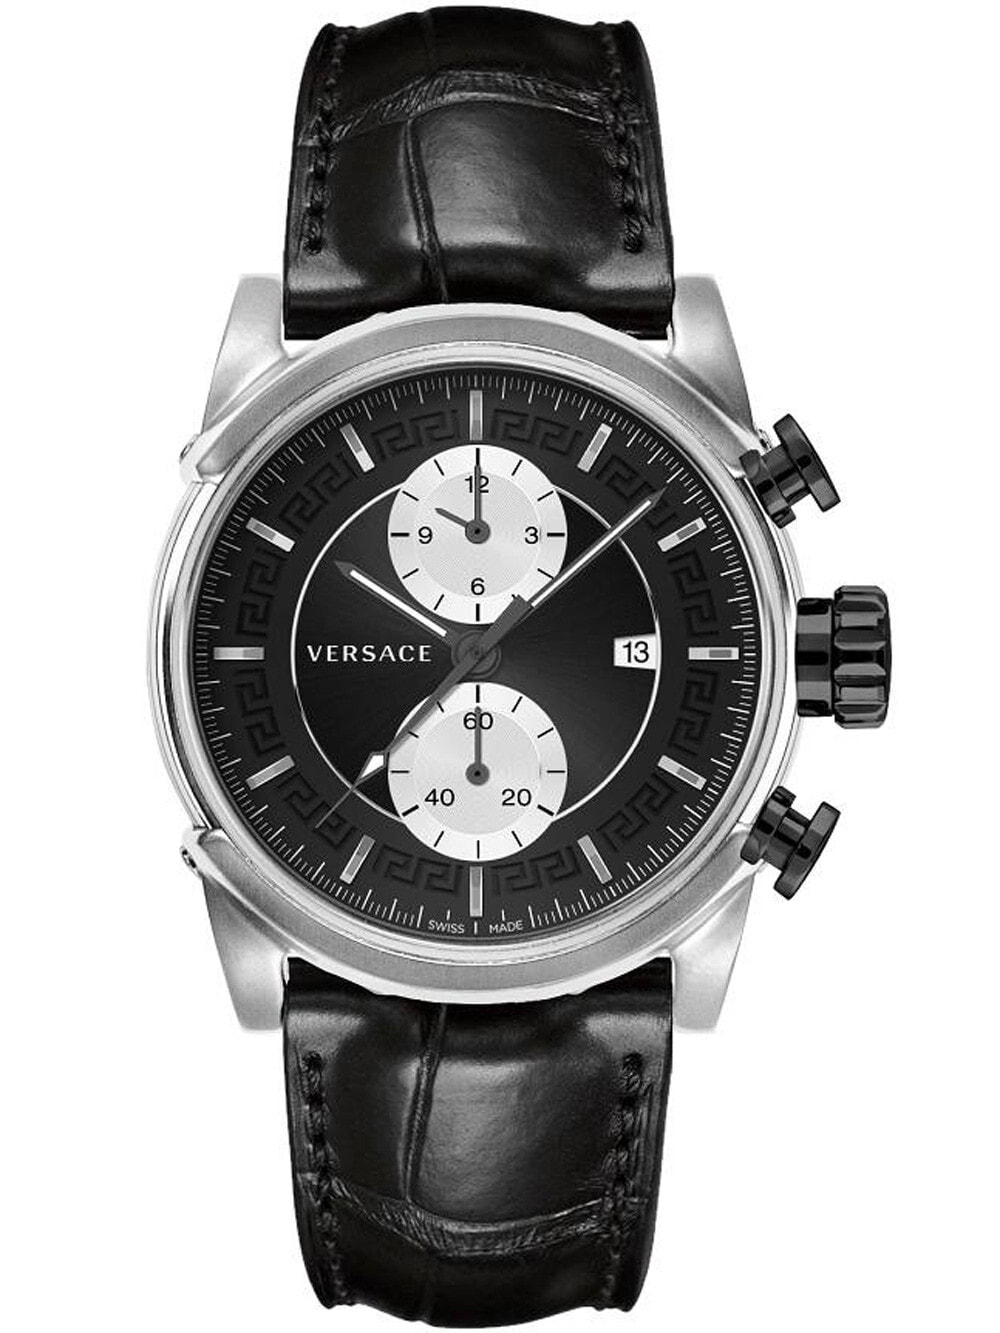 Мужские наручные часы с черным кожаным ремешком Versace VEV400119 Urban Chronograph 44mm 5ATM